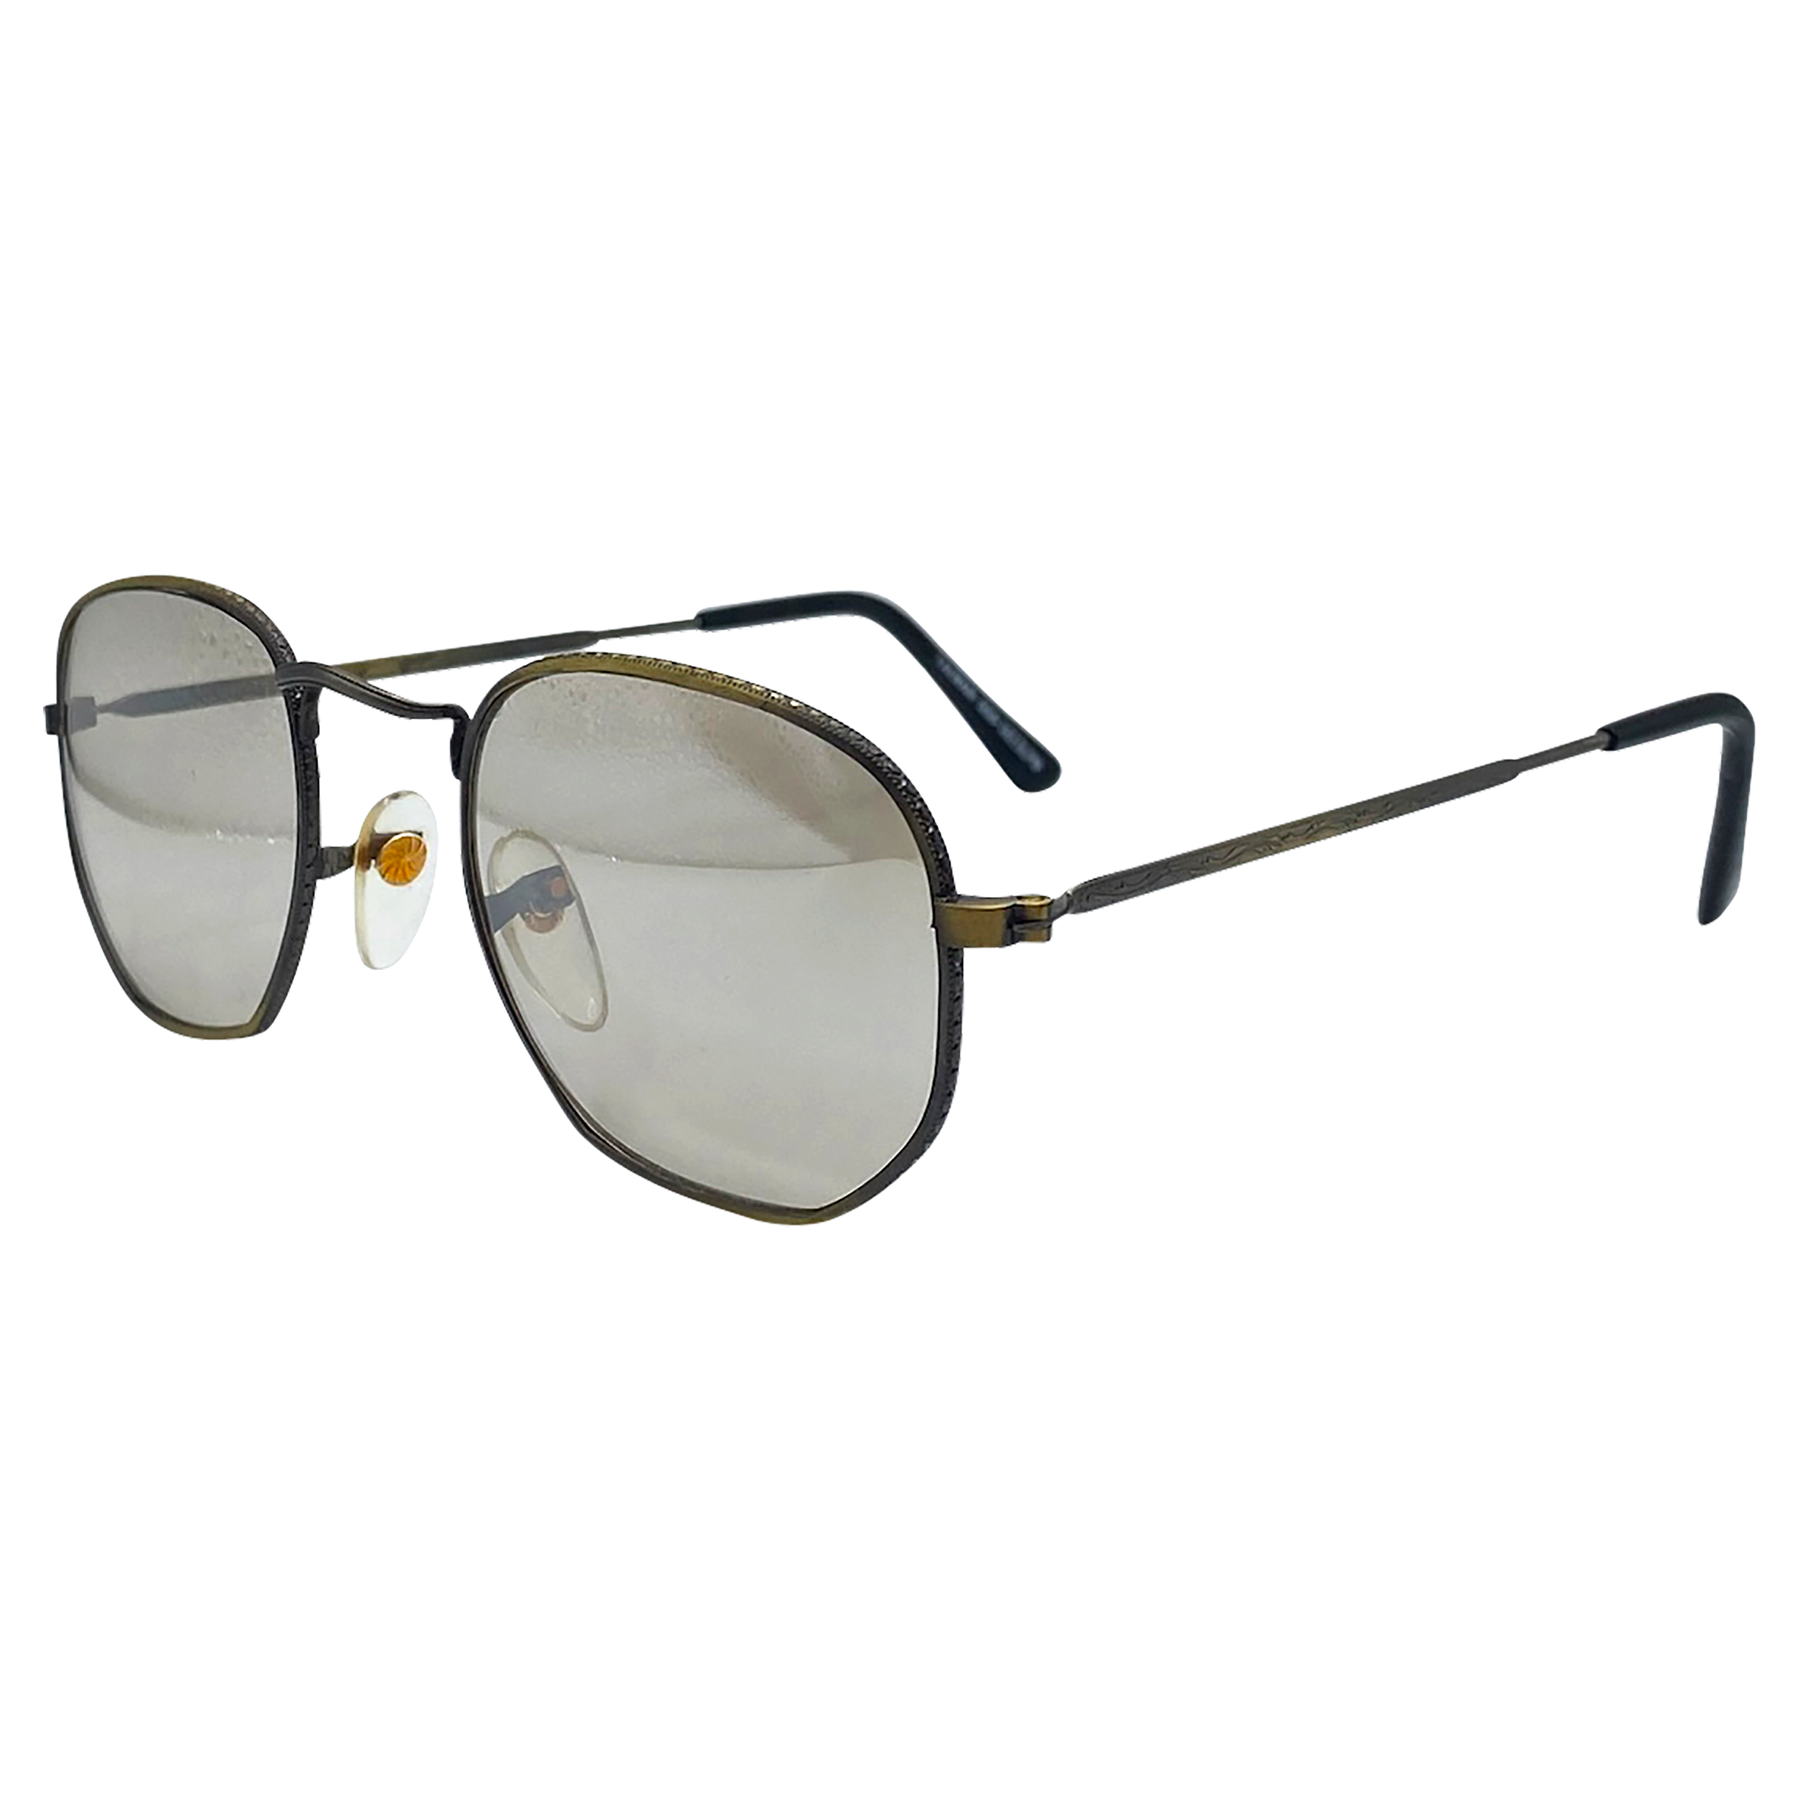 VANCE Relic Angular Indie Sunglasses